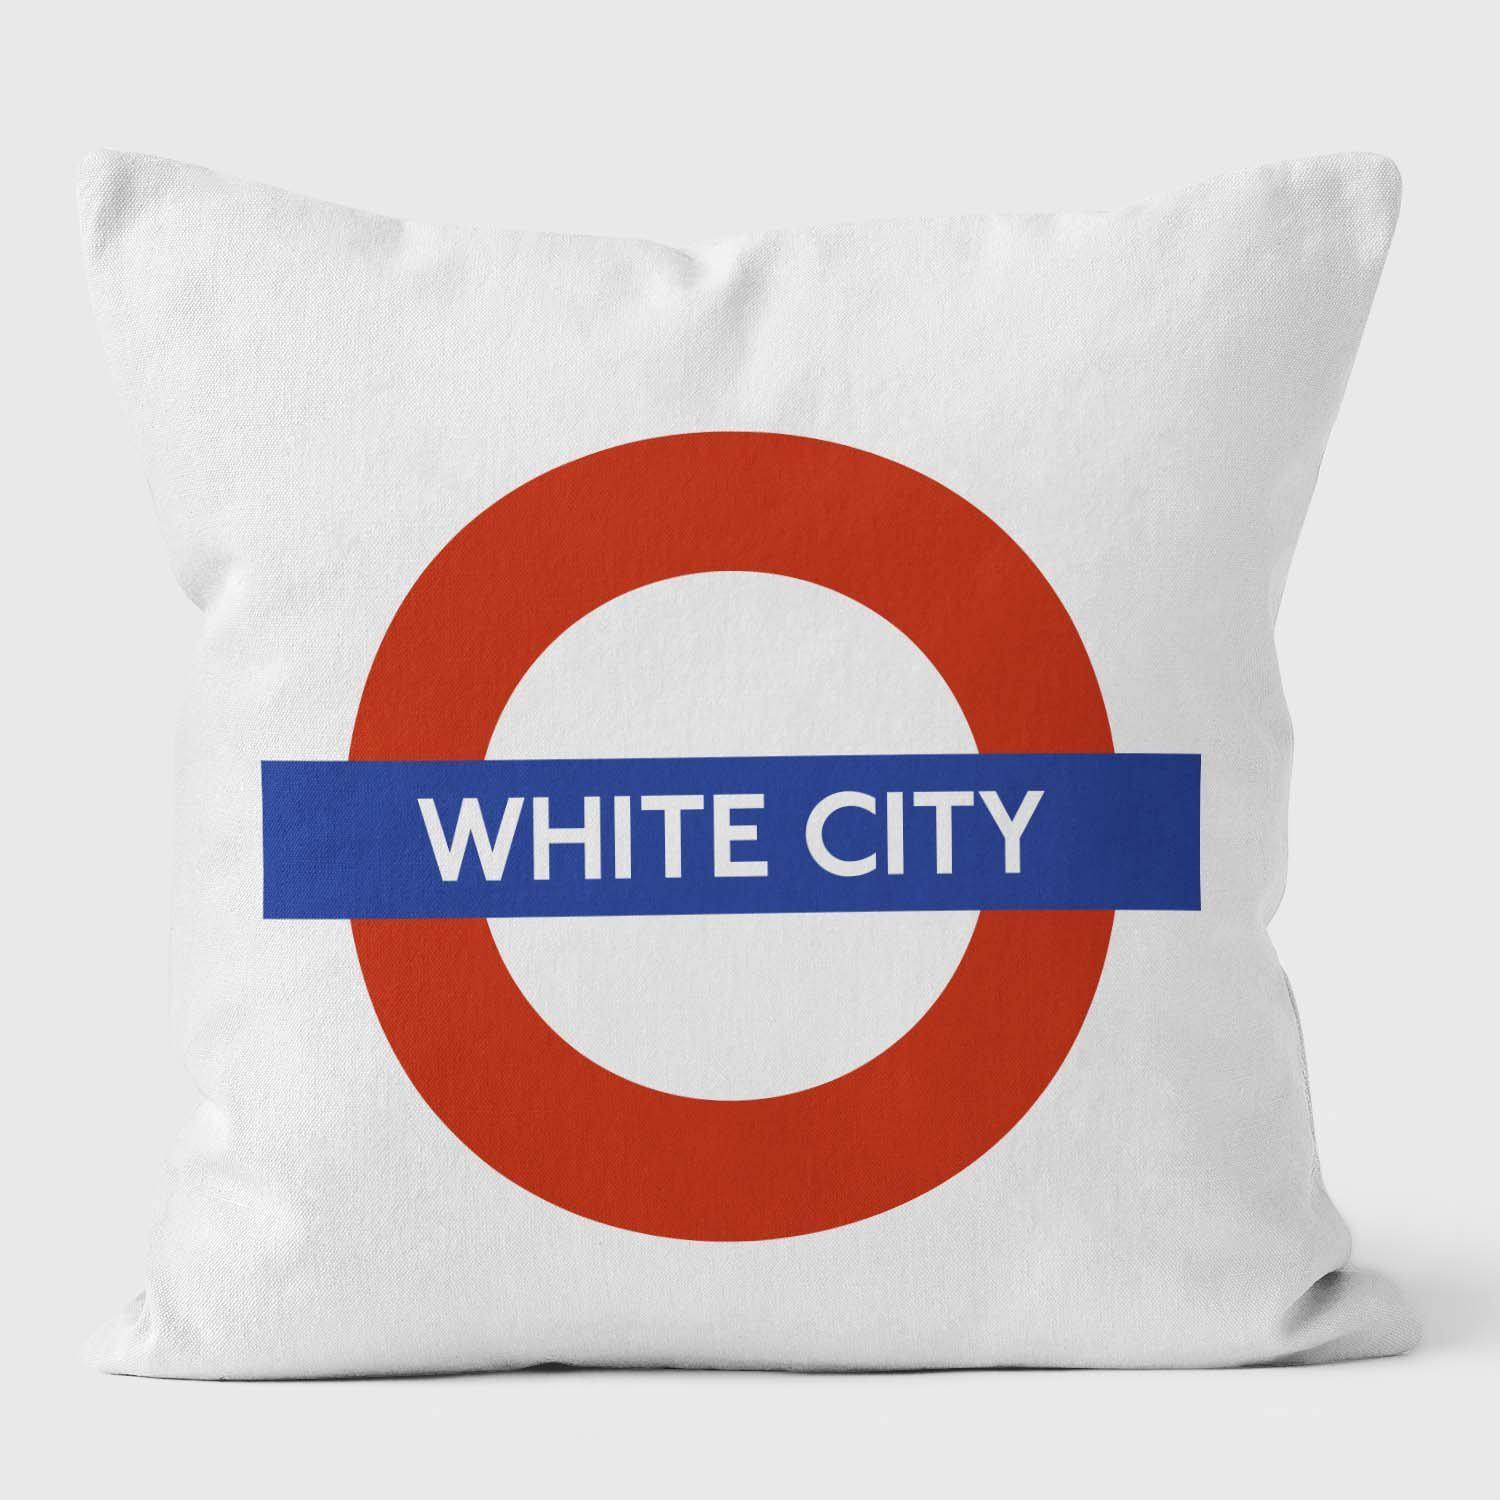 White City London Underground Tube Station Roundel Cushion - Handmade Cushions UK - WeLoveCushions